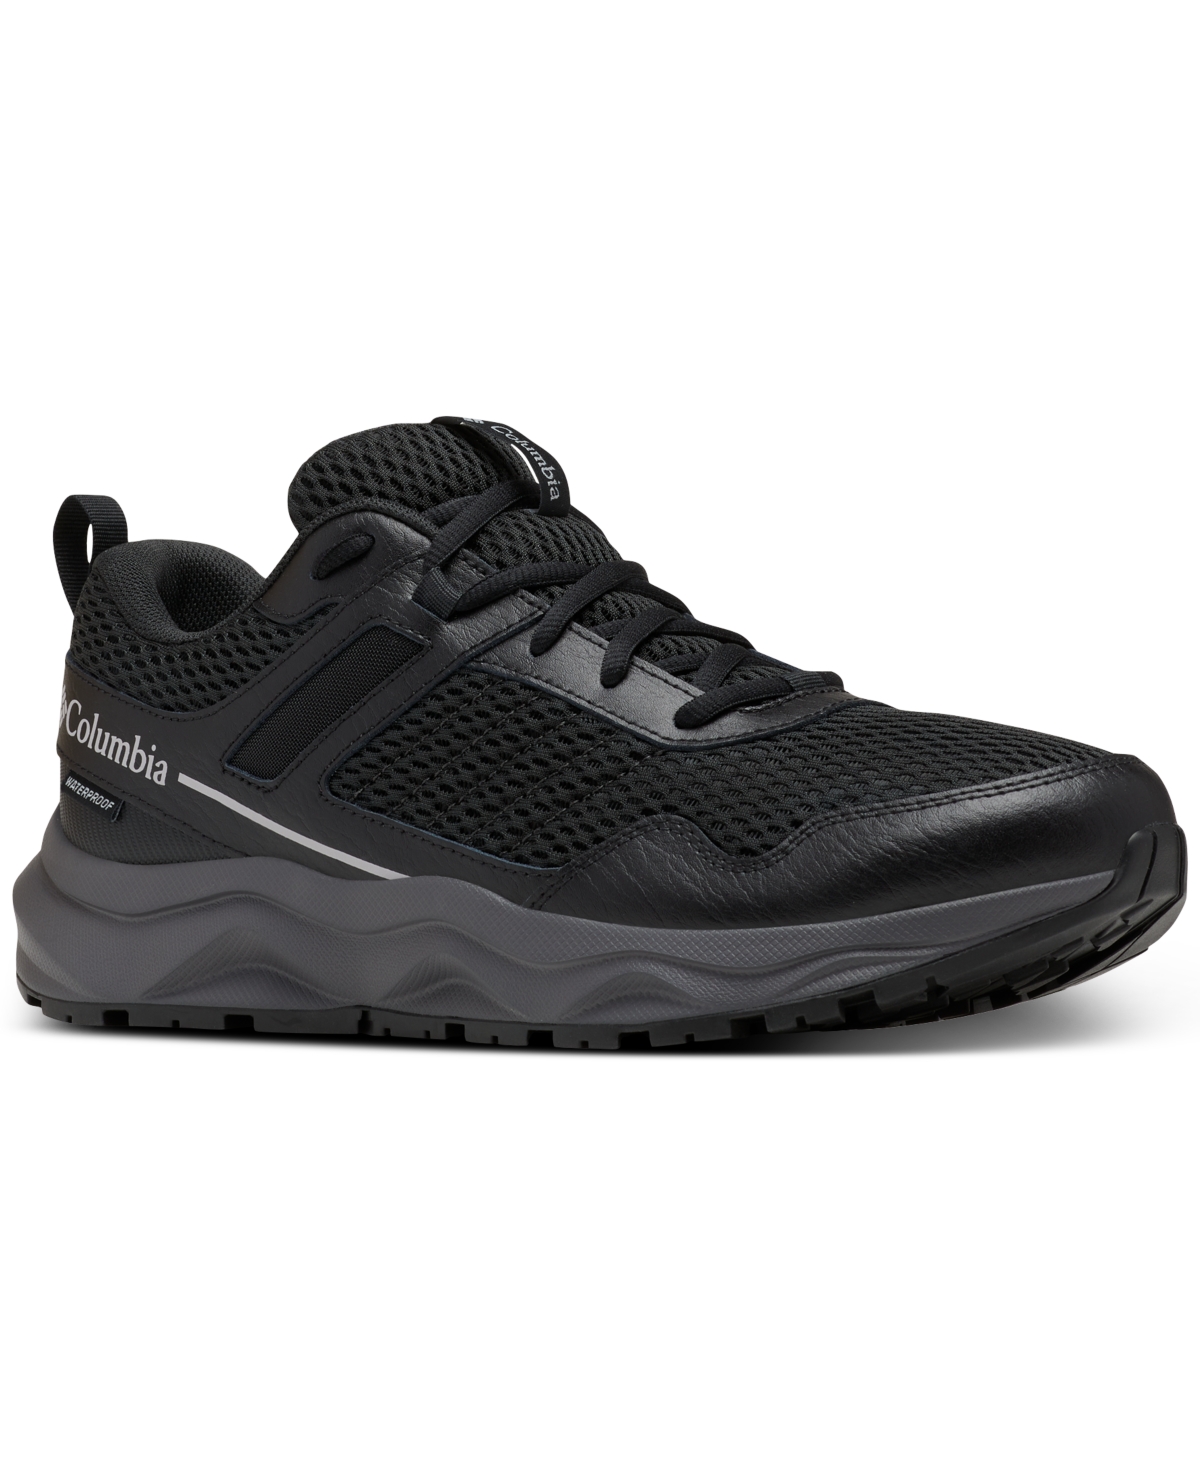 Columbia Men's Plateau Waterproof Trail Shoe In Black,steam